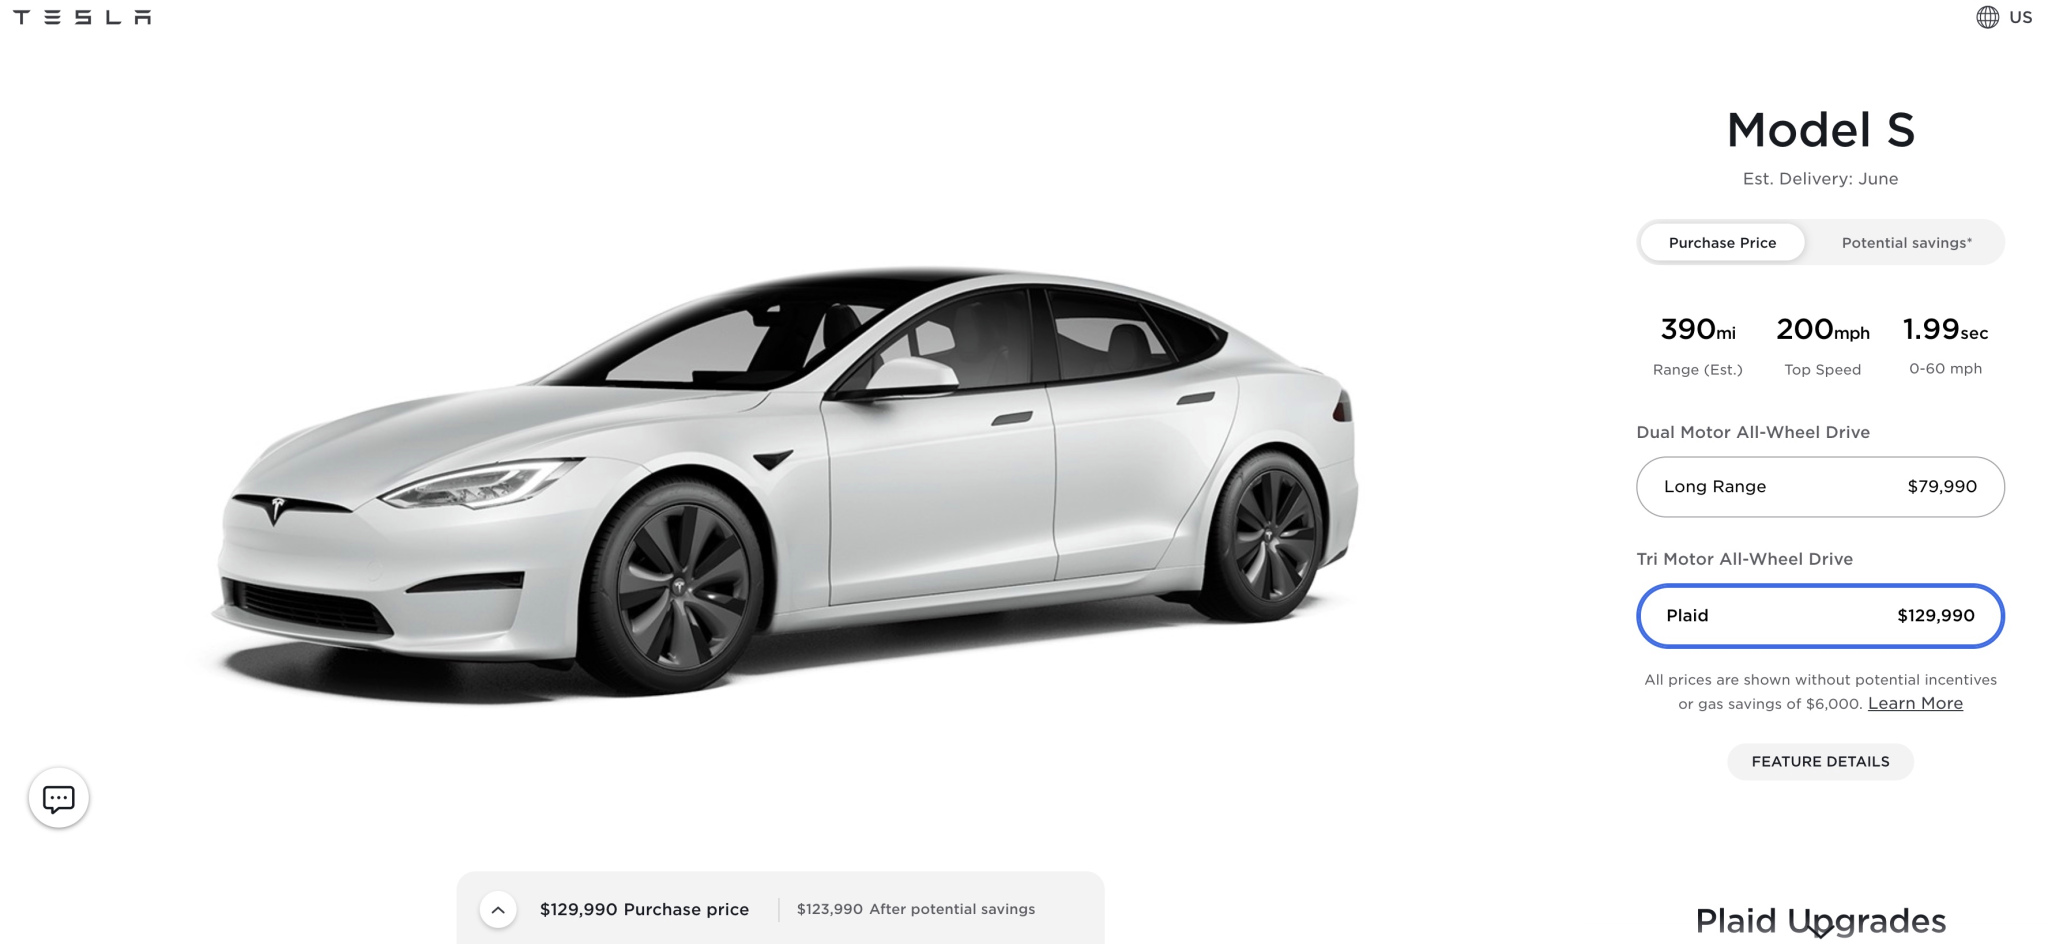 Tesla повысила цену на Model S Plaid перед самым началом поставок — она стала дороже на 10 тысяч долларов